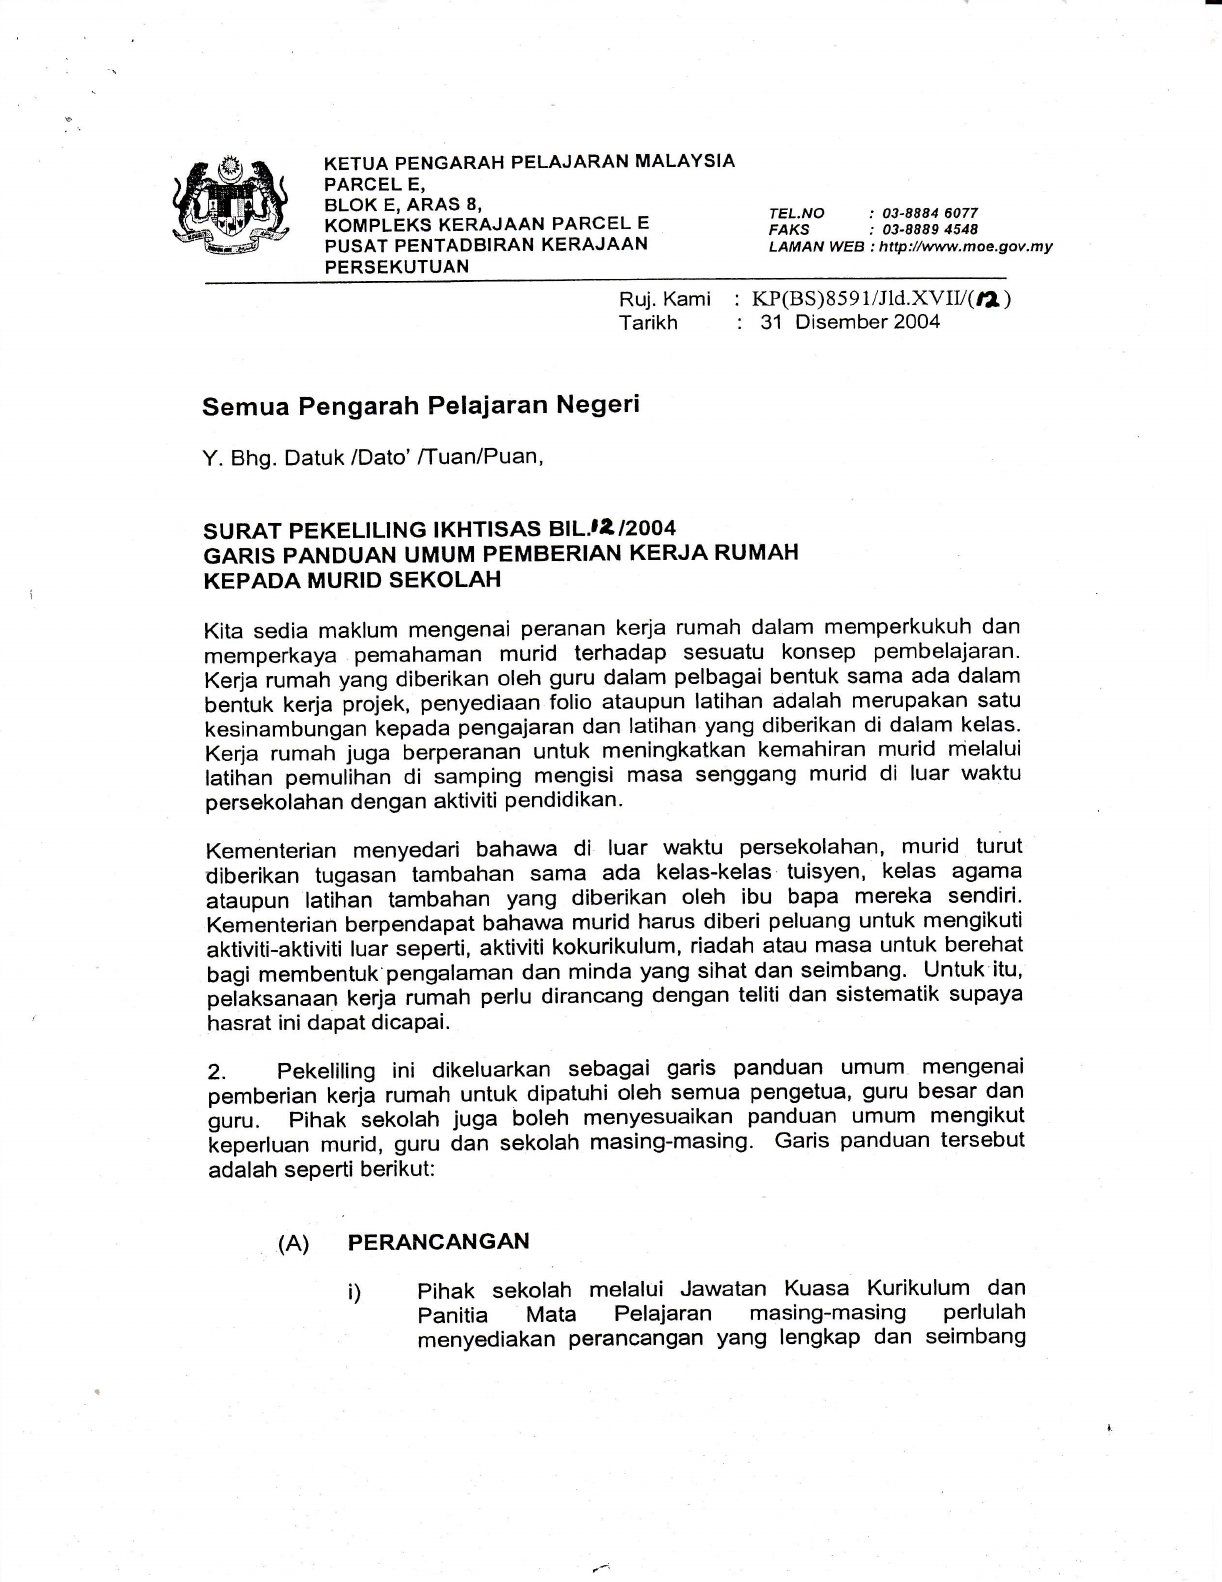 Surat Pekeliling Perkhidmatan Kementerian Pelajaran Malaysia Bil 1 Tahun 2006